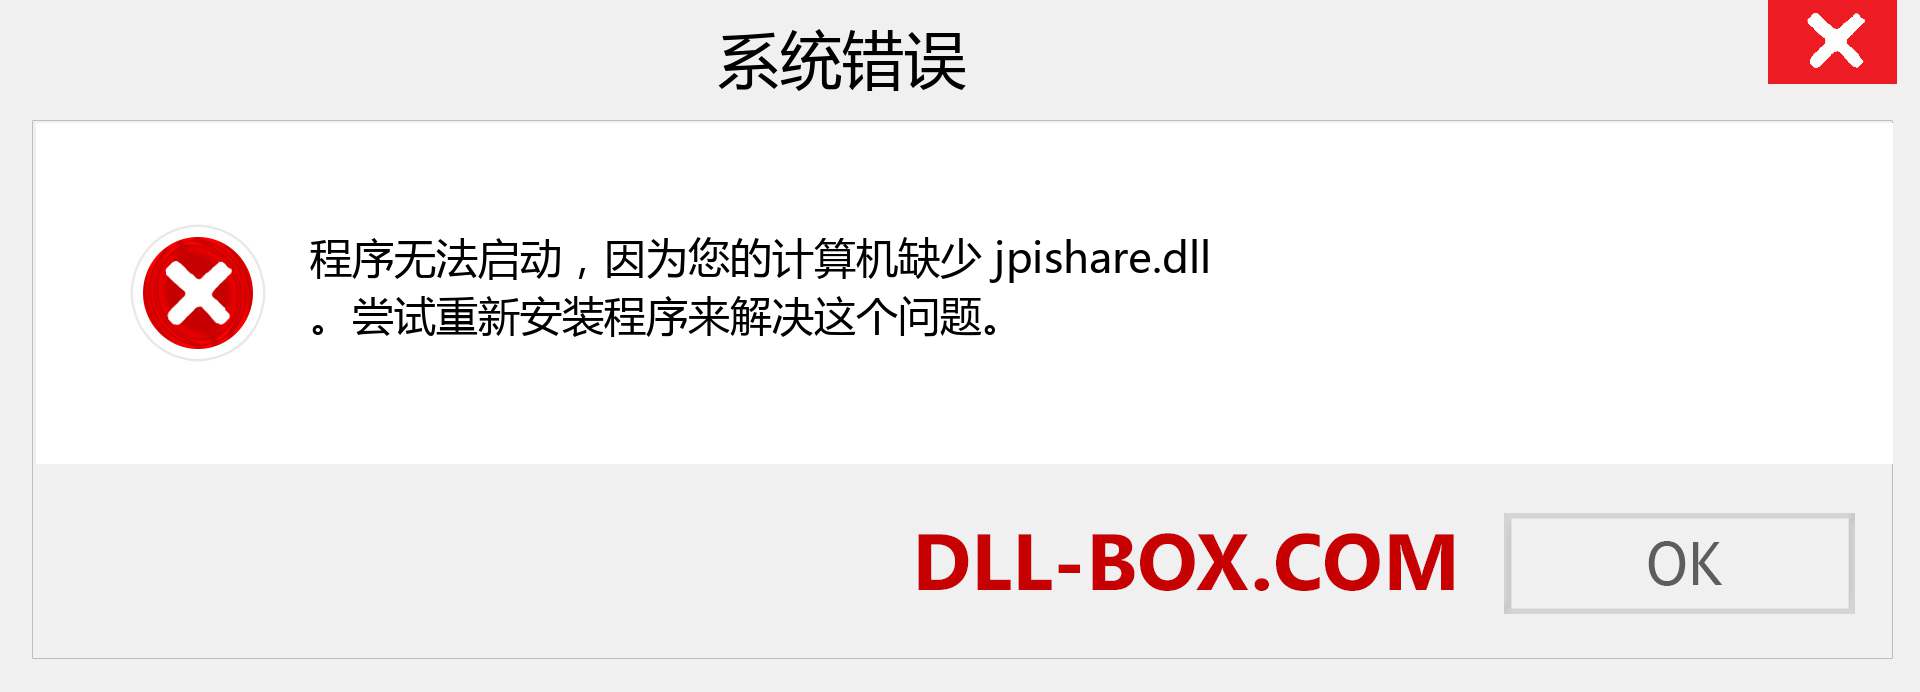 jpishare.dll 文件丢失？。 适用于 Windows 7、8、10 的下载 - 修复 Windows、照片、图像上的 jpishare dll 丢失错误